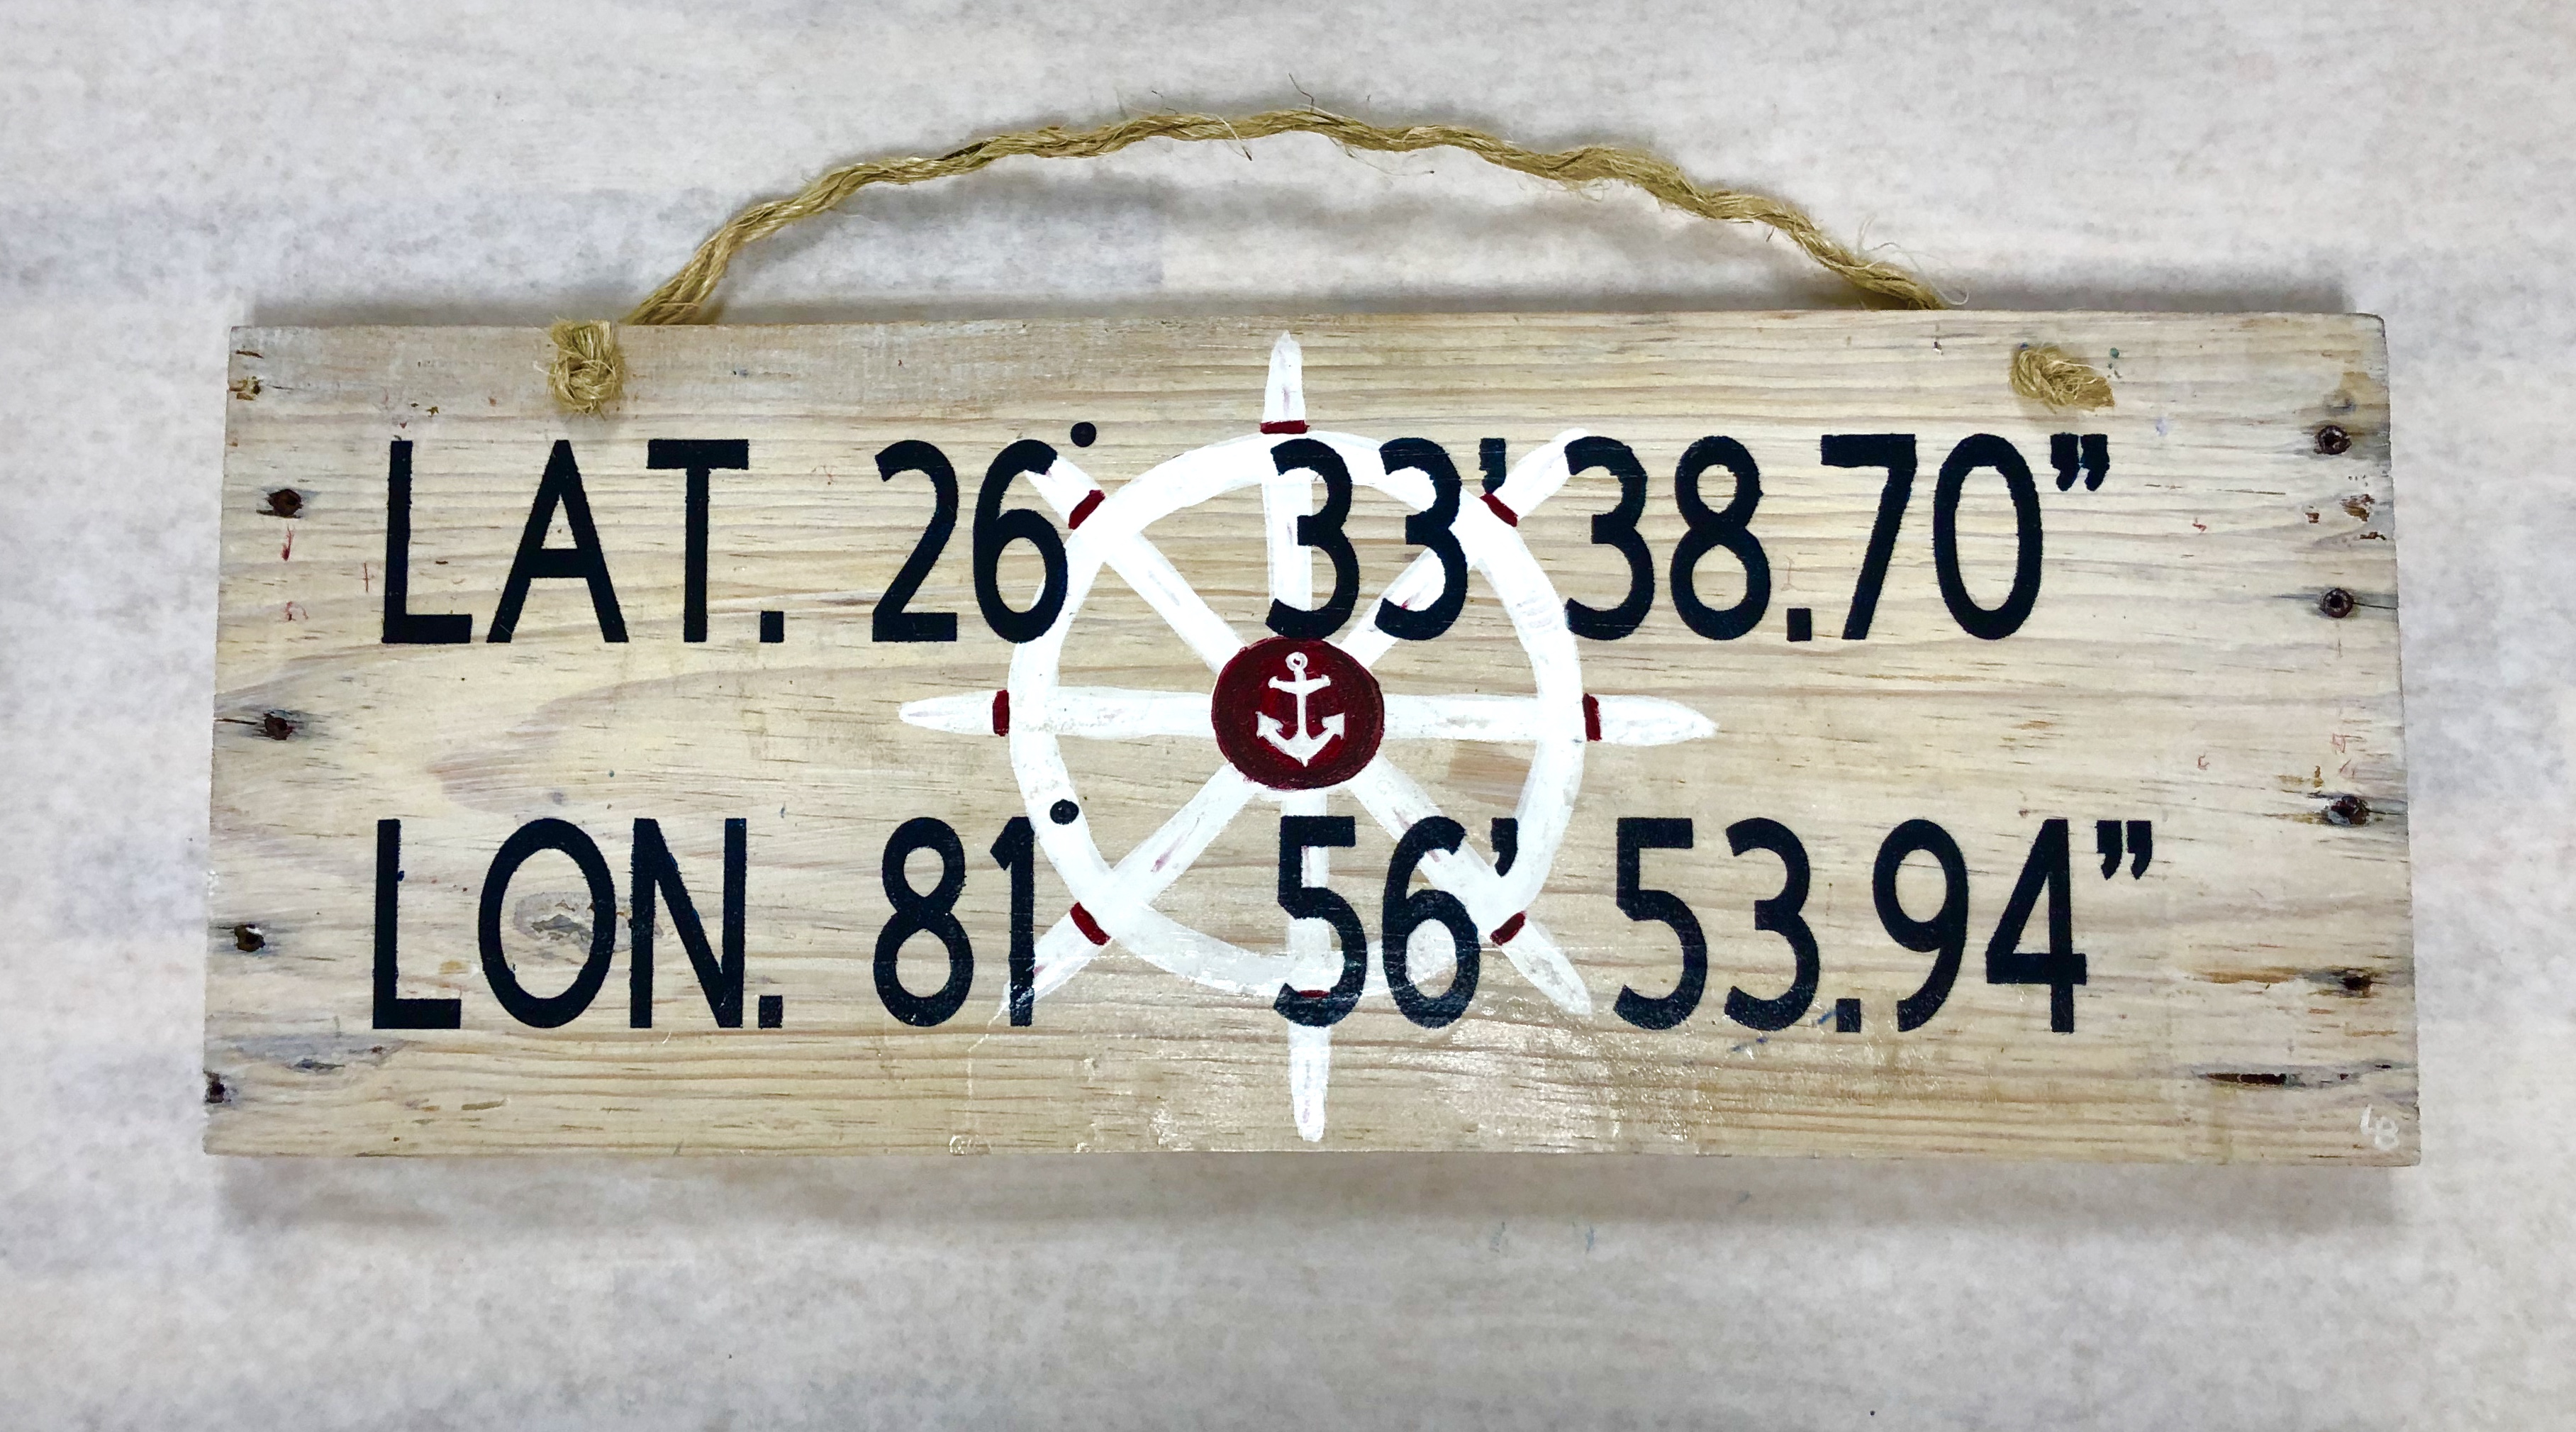 Nautical Address Plate